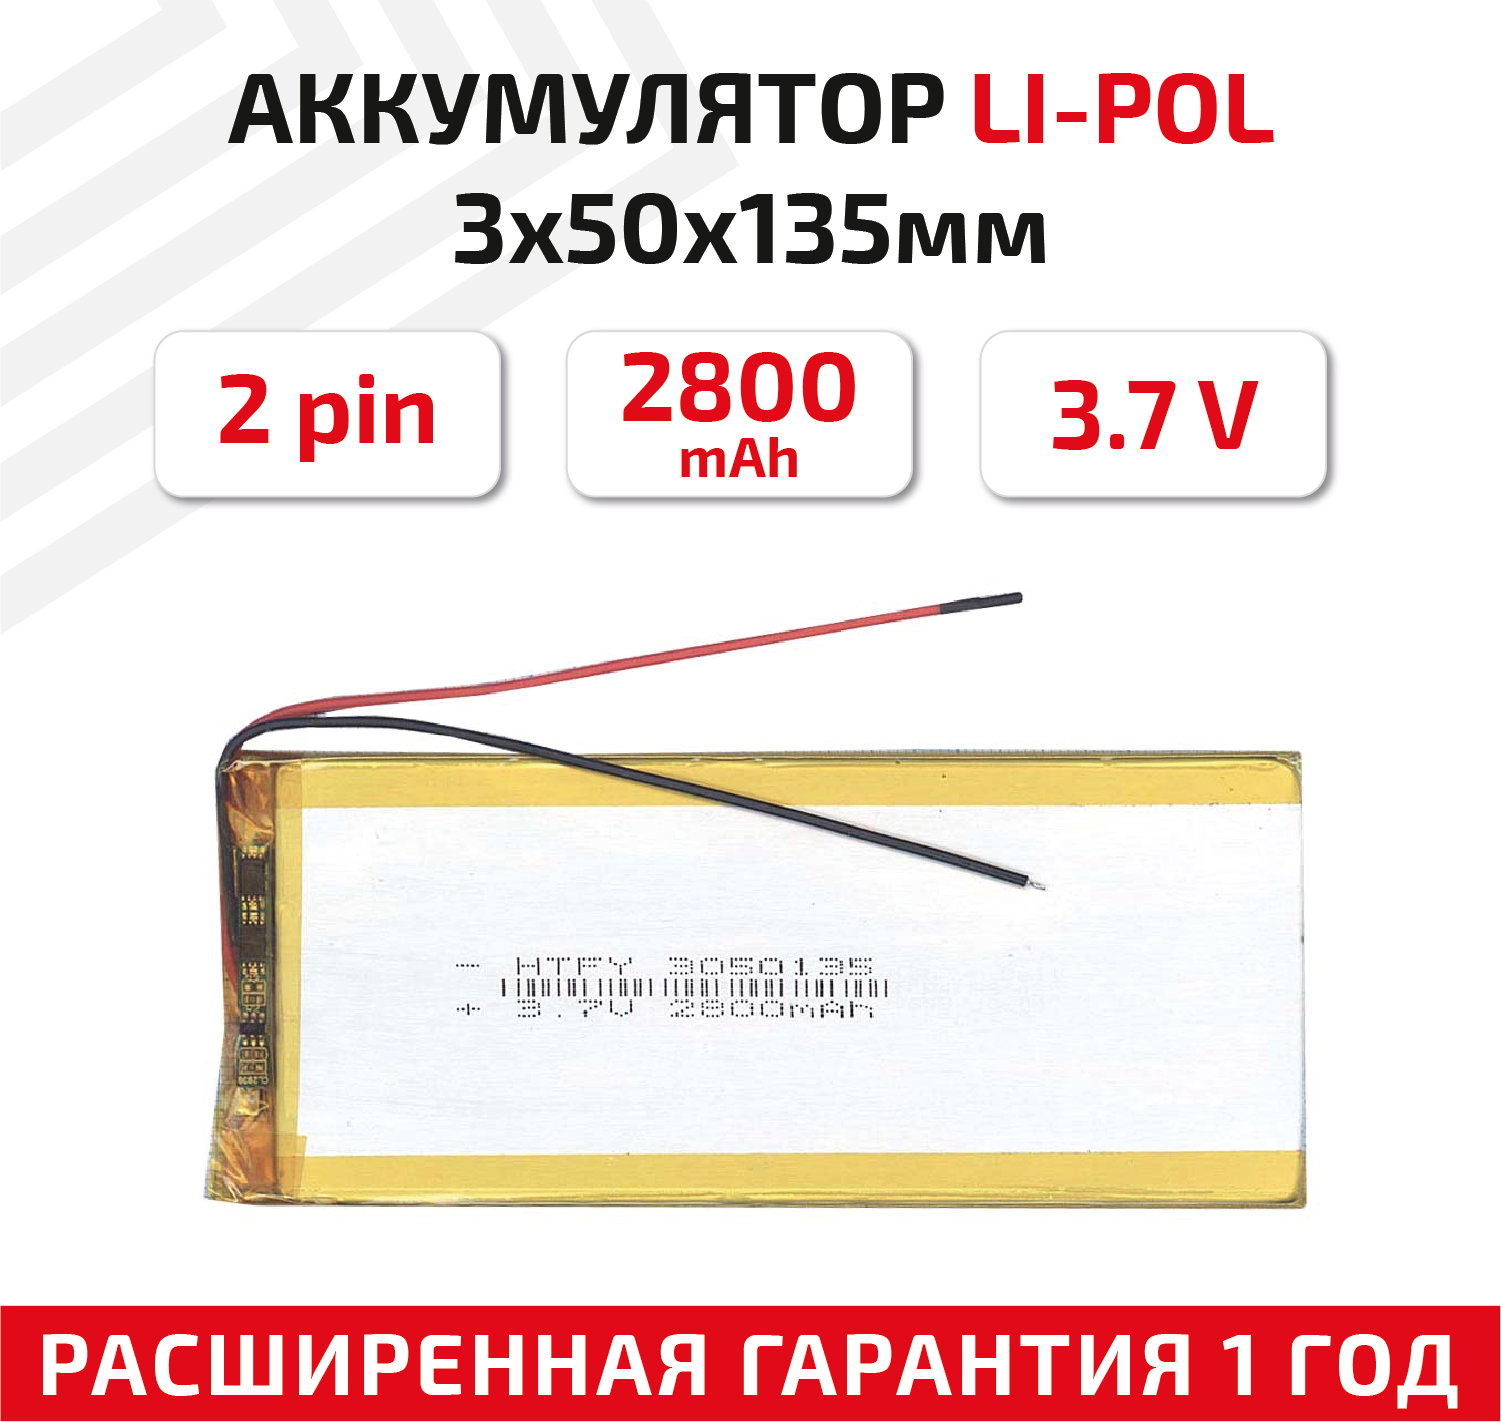 Универсальный аккумулятор (АКБ) для планшета, видеорегистратора и др, 3х50х135мм, 2800мАч, 3.7В, Li-Pol, 2pin (на 2 провода)